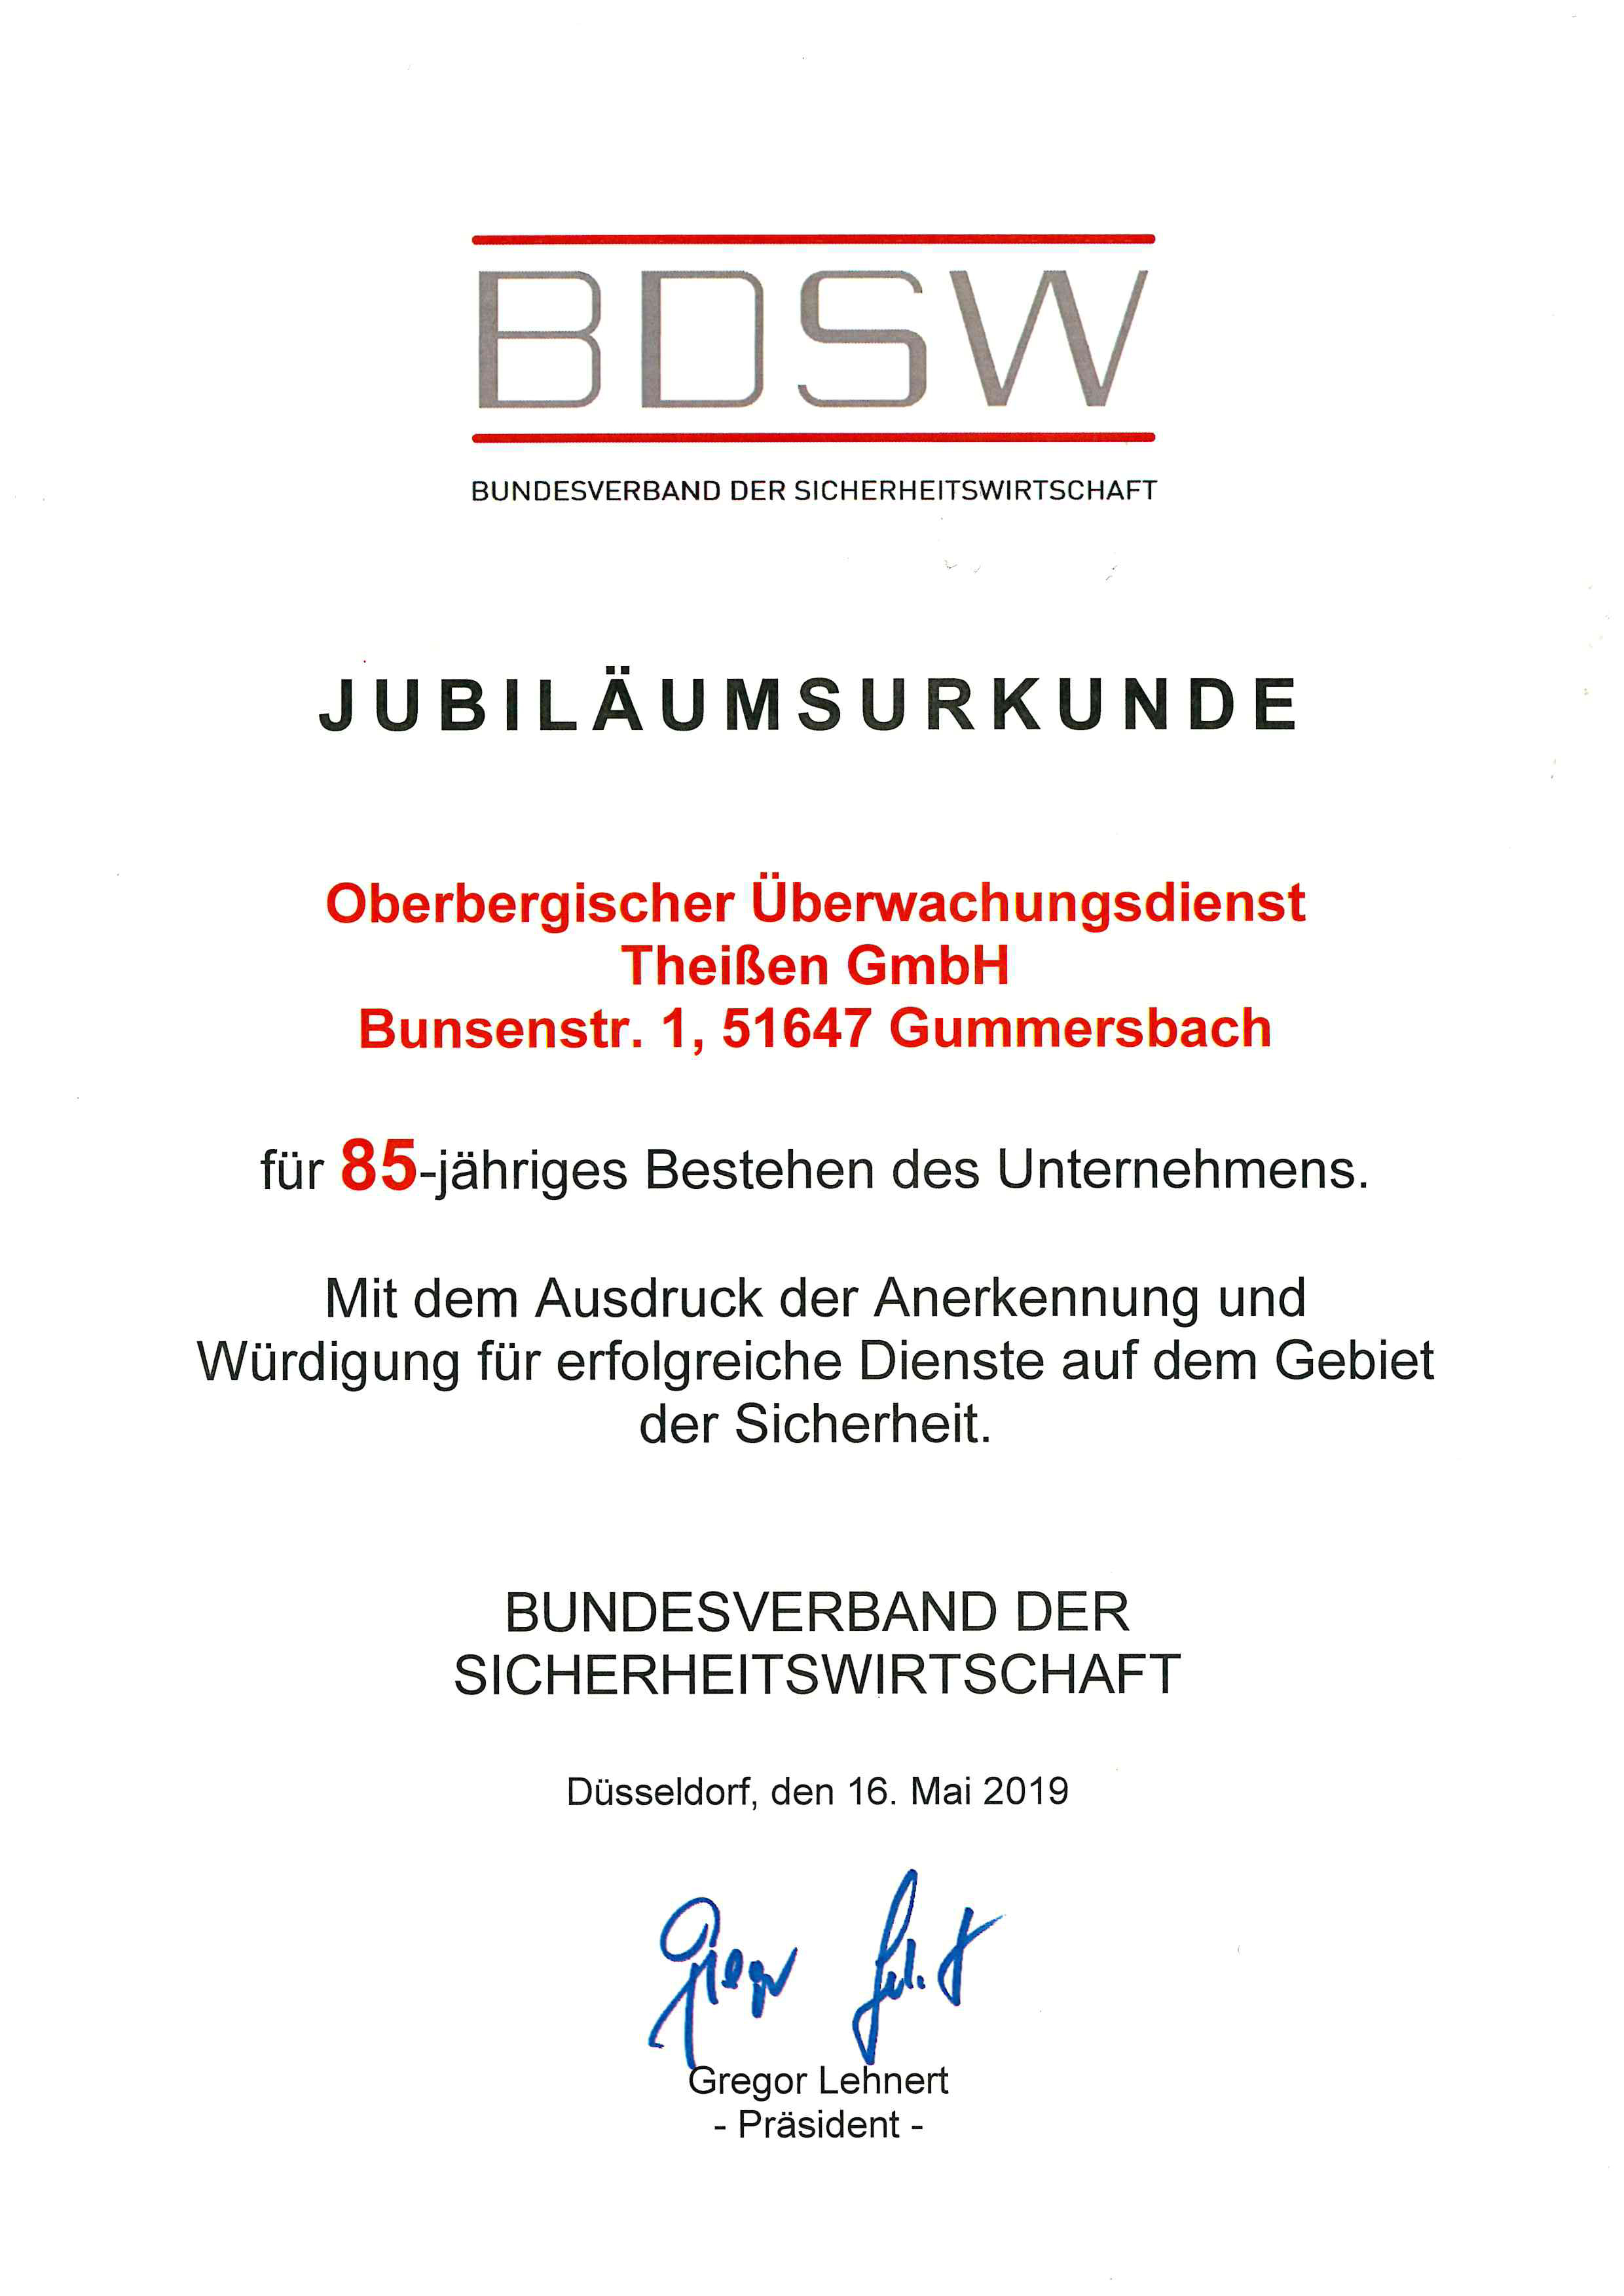 BDSW Jubiläumsurkunde